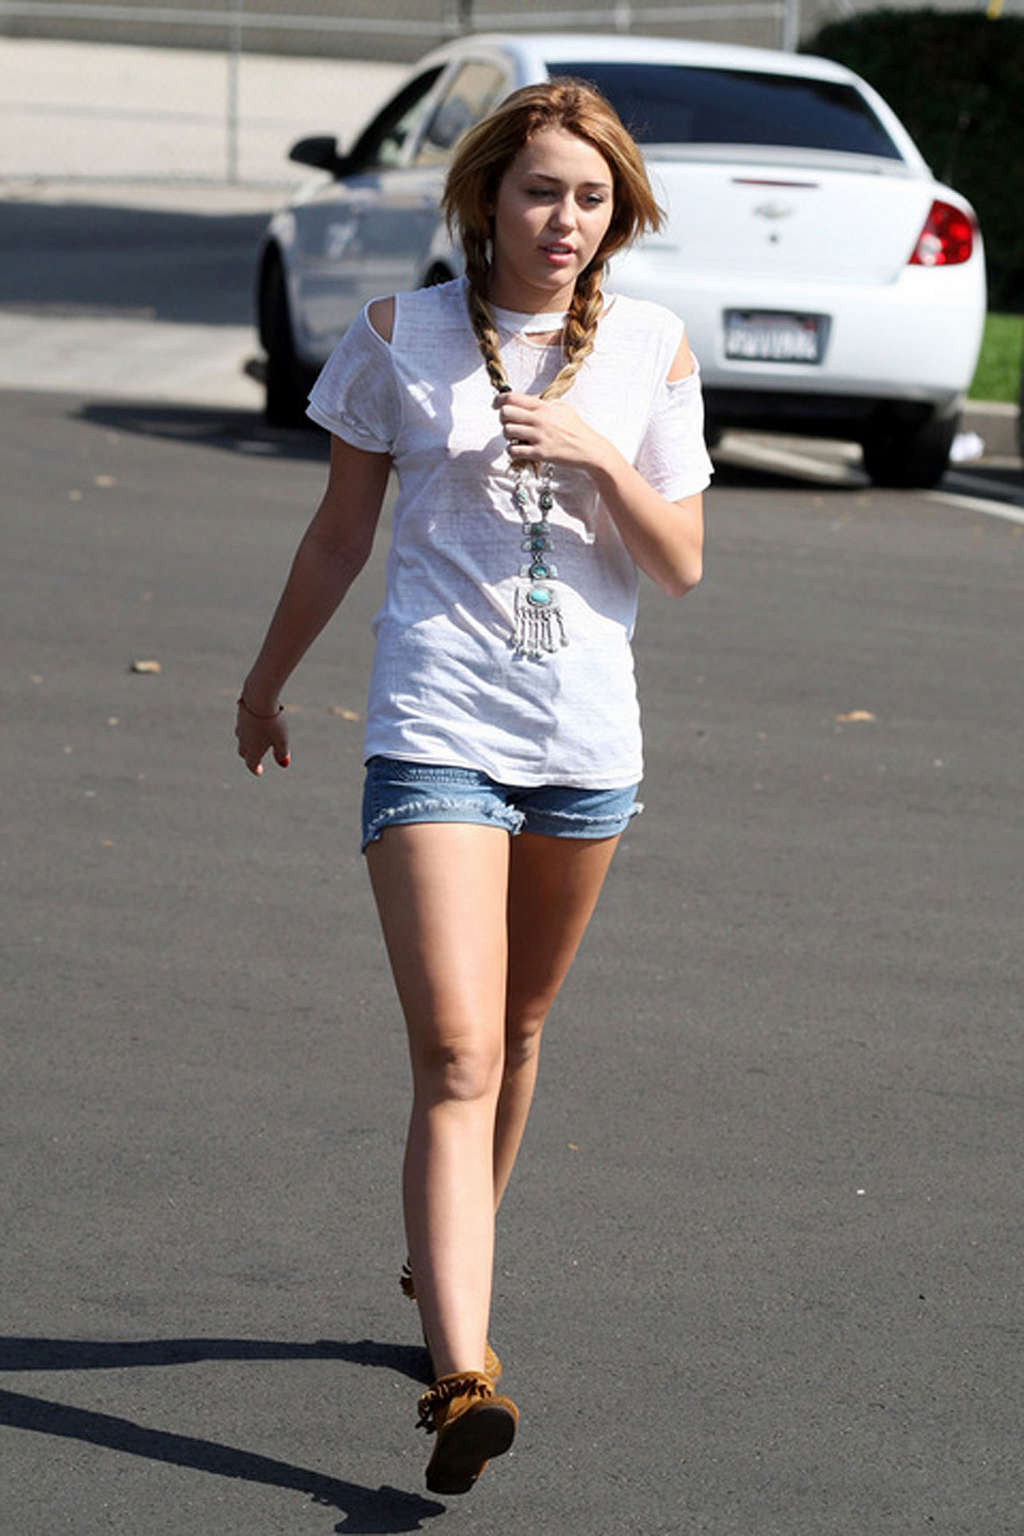 Miley cyrus exponiendo piernas sexys en shorts y pezones duros en la calle
 #75330213